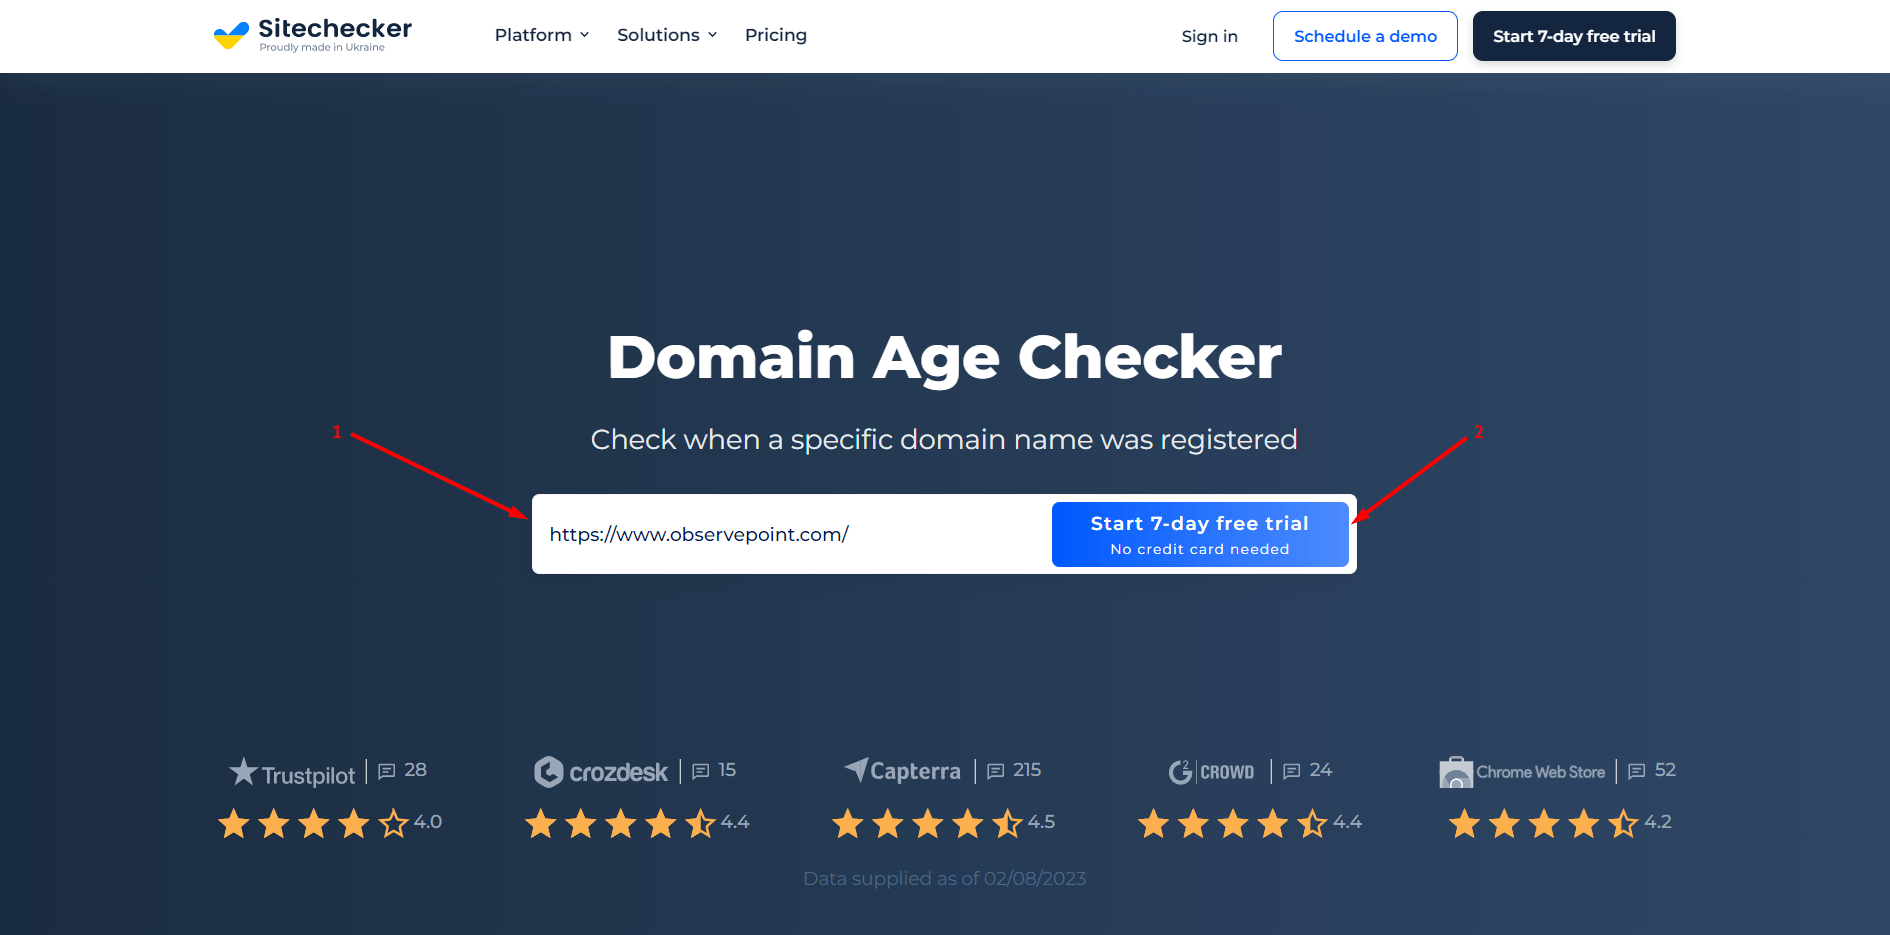 Domain age checker - add domain